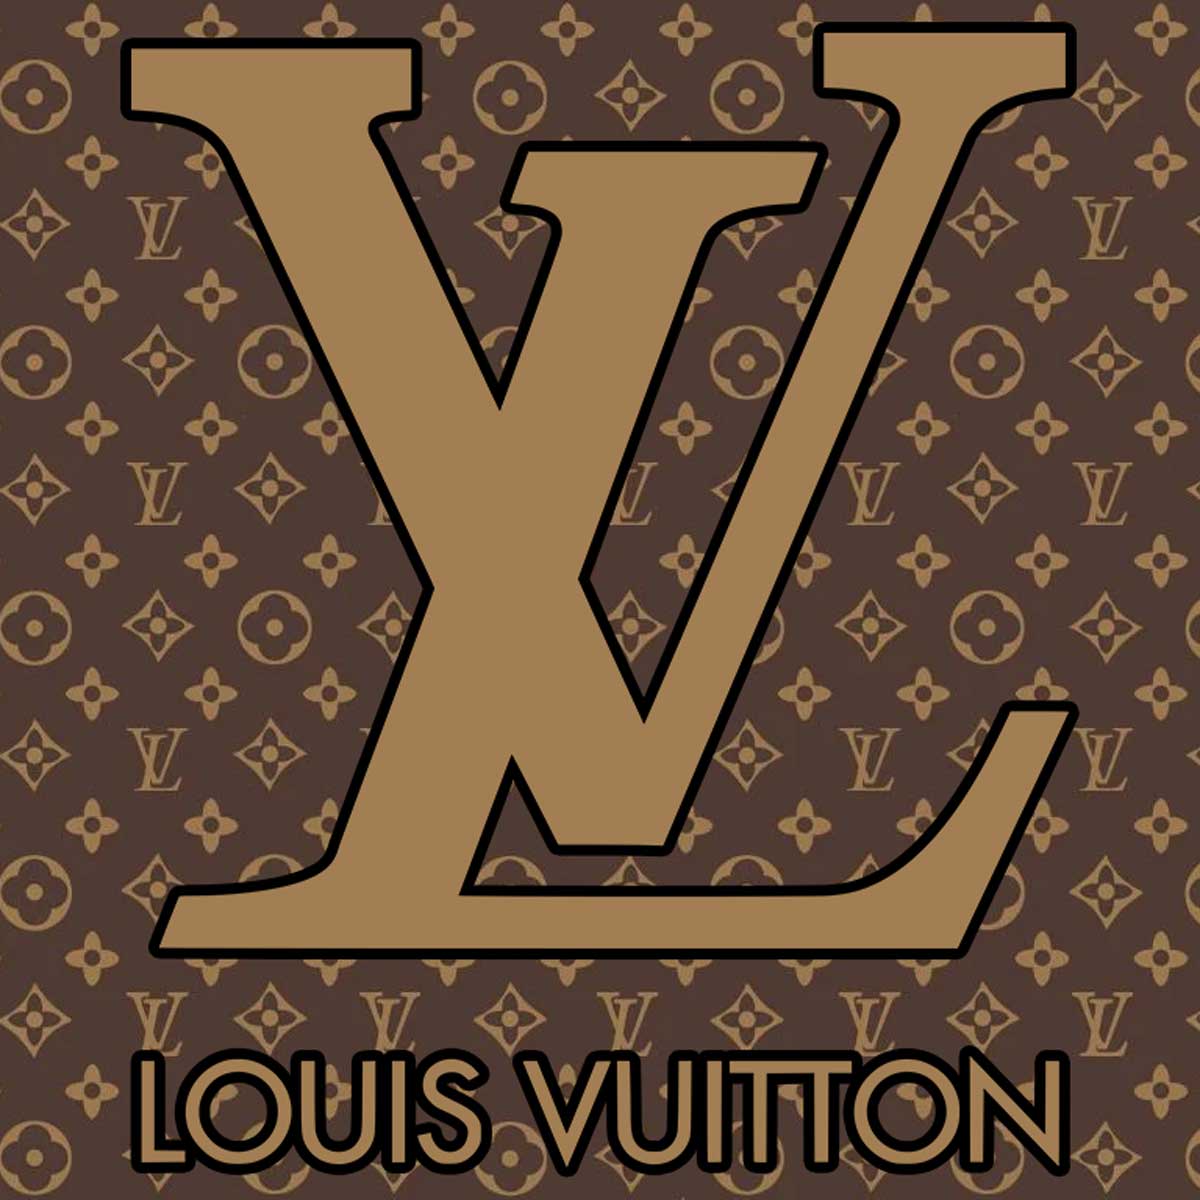 El logo de Louis Vuitton y su monograma.